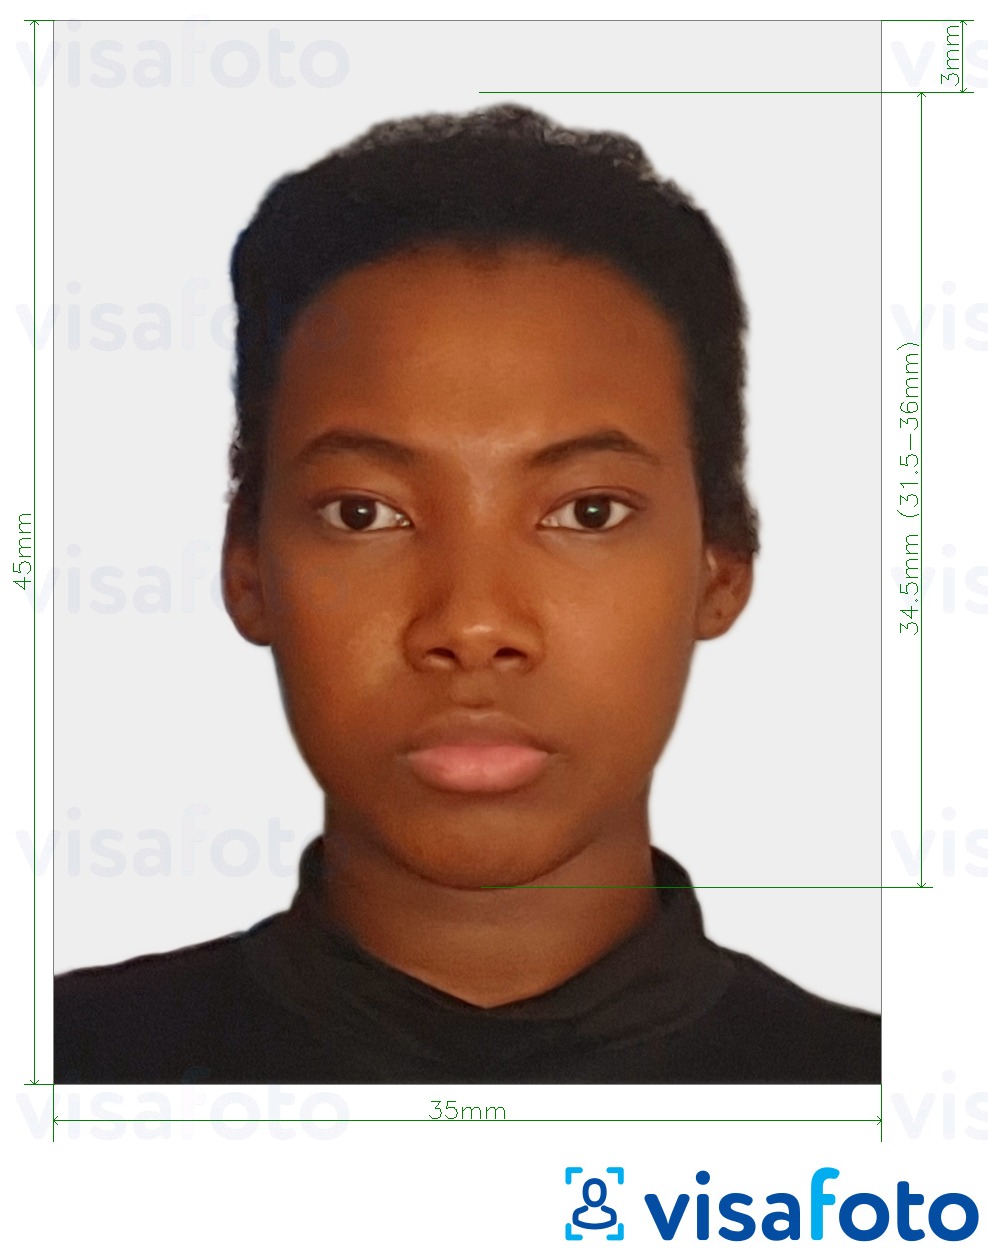 так көлөмү көрсөтүү менен Суринам паспорт 45x35 мм (1.77x1.37 дюйм) сүрөтү үлгүсү